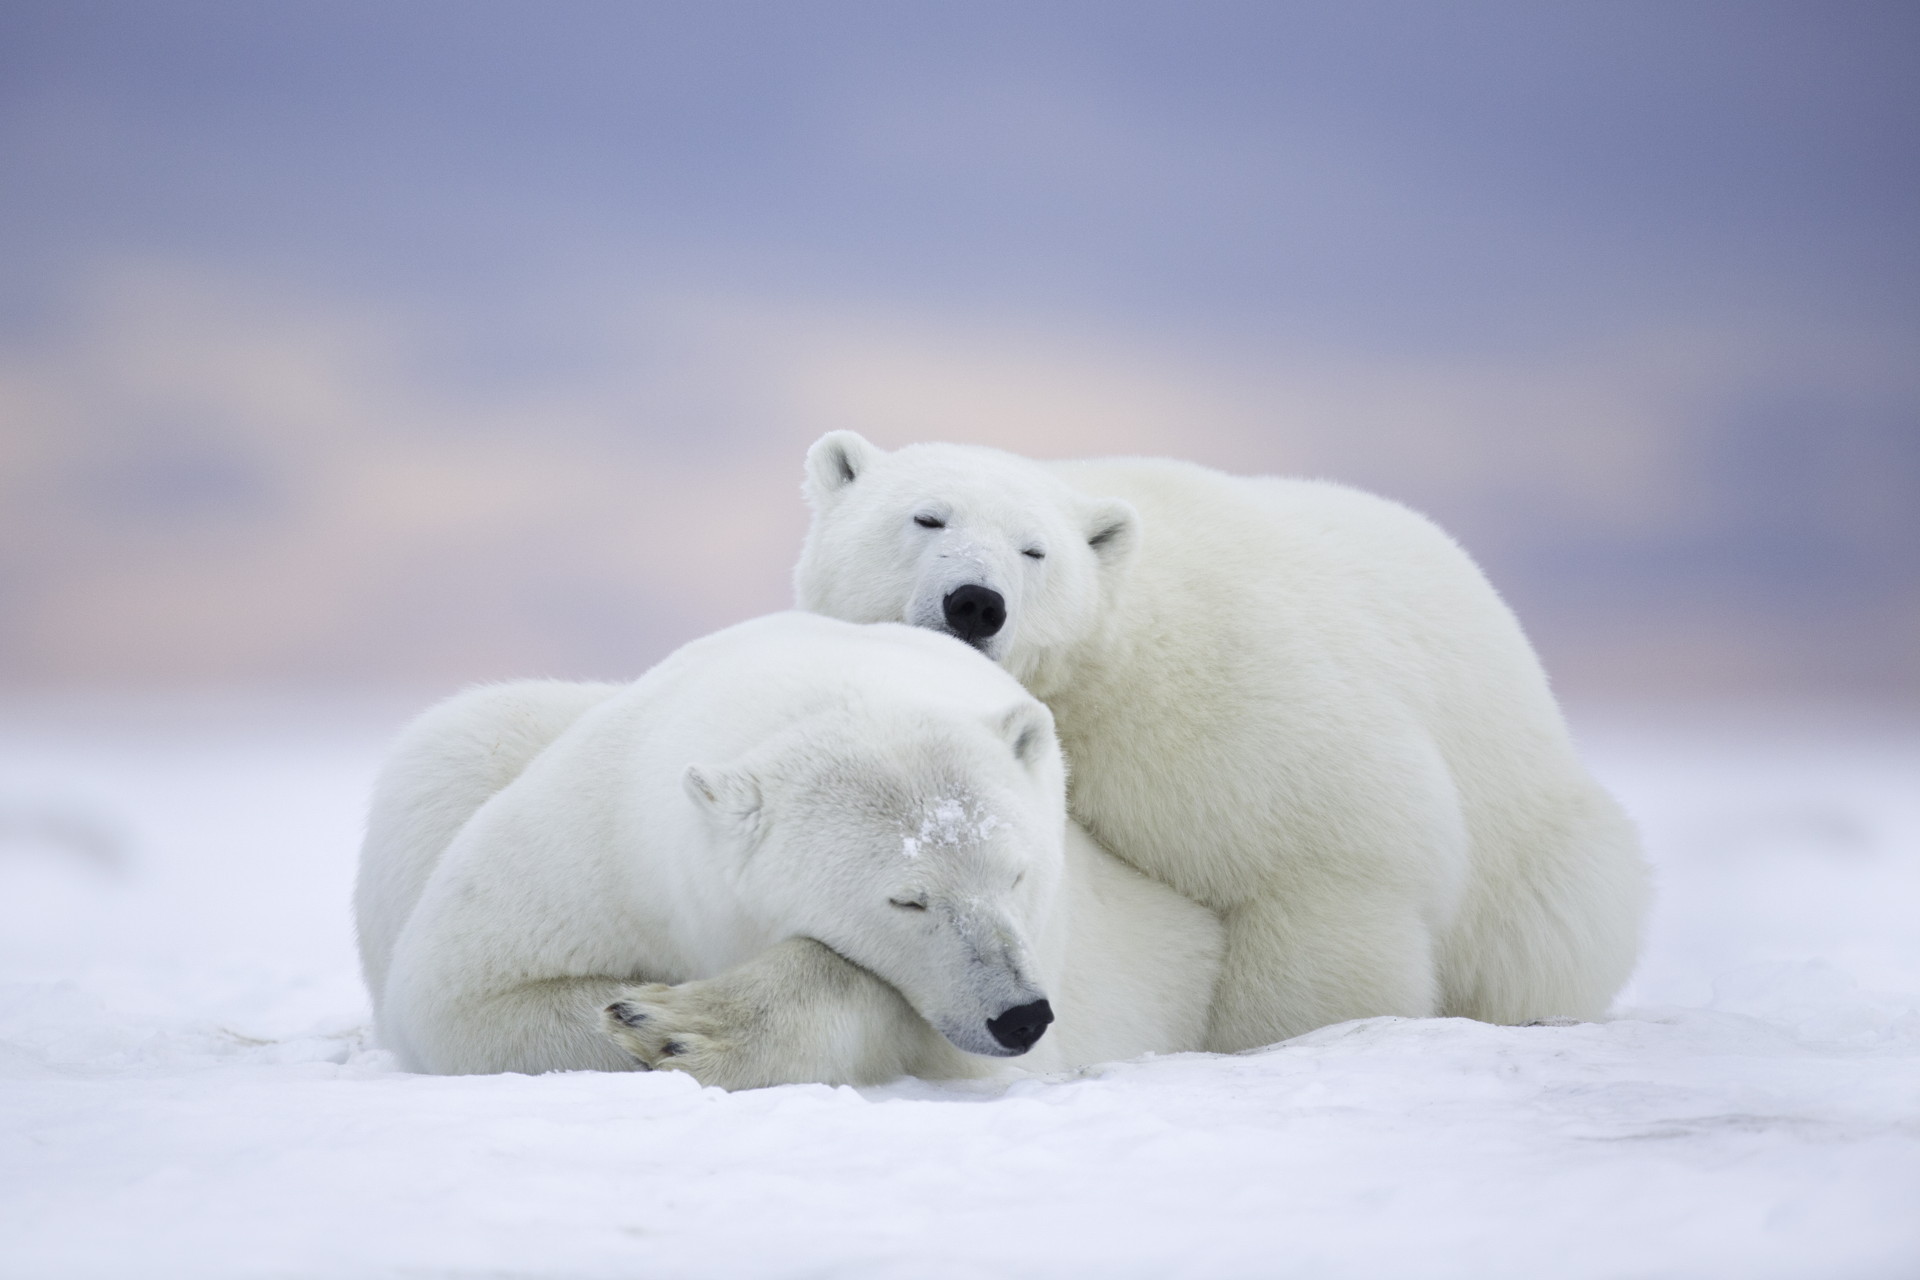 Siêu cute, bức ảnh gấu Bắc Cực: Nếu bạn yêu động vật, hãy đến xem bức ảnh của chú gấu Bắc Cực này. Với bộ lông mềm mại và đôi mắt to tròn, đây là một trong những loài động vật đáng yêu nhất trên thế giới. Hãy theo dõi chú ta trong thế giới tự nhiên tuyệt đẹp của chúng ta.